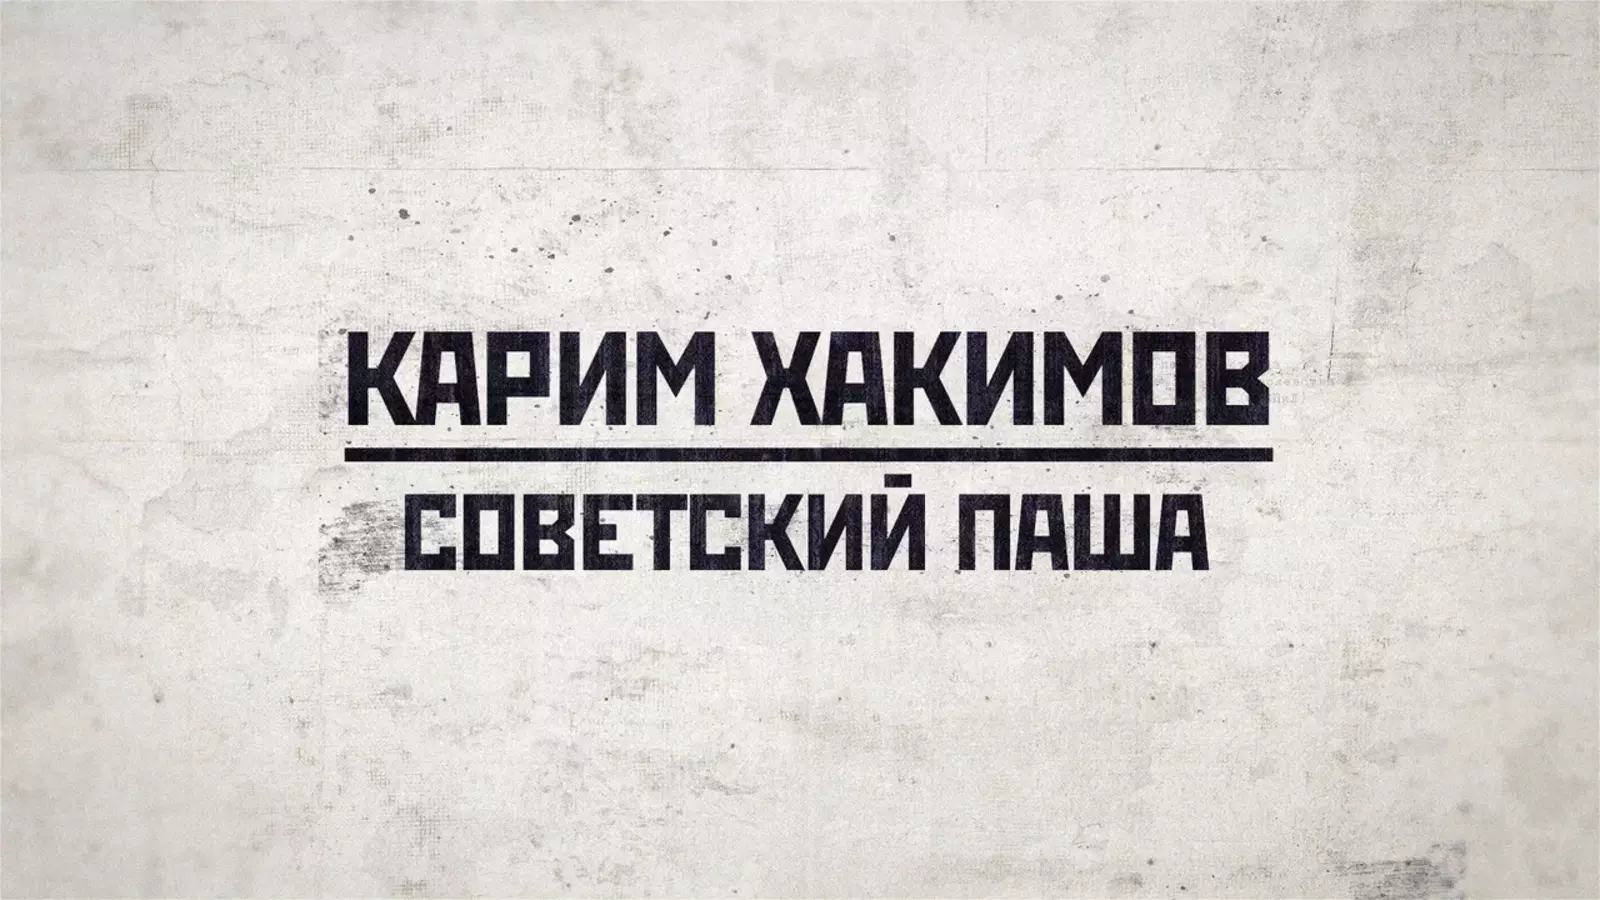 Премьера документального фильма «Карим Хакимов» состоялась на канале «Звезда»